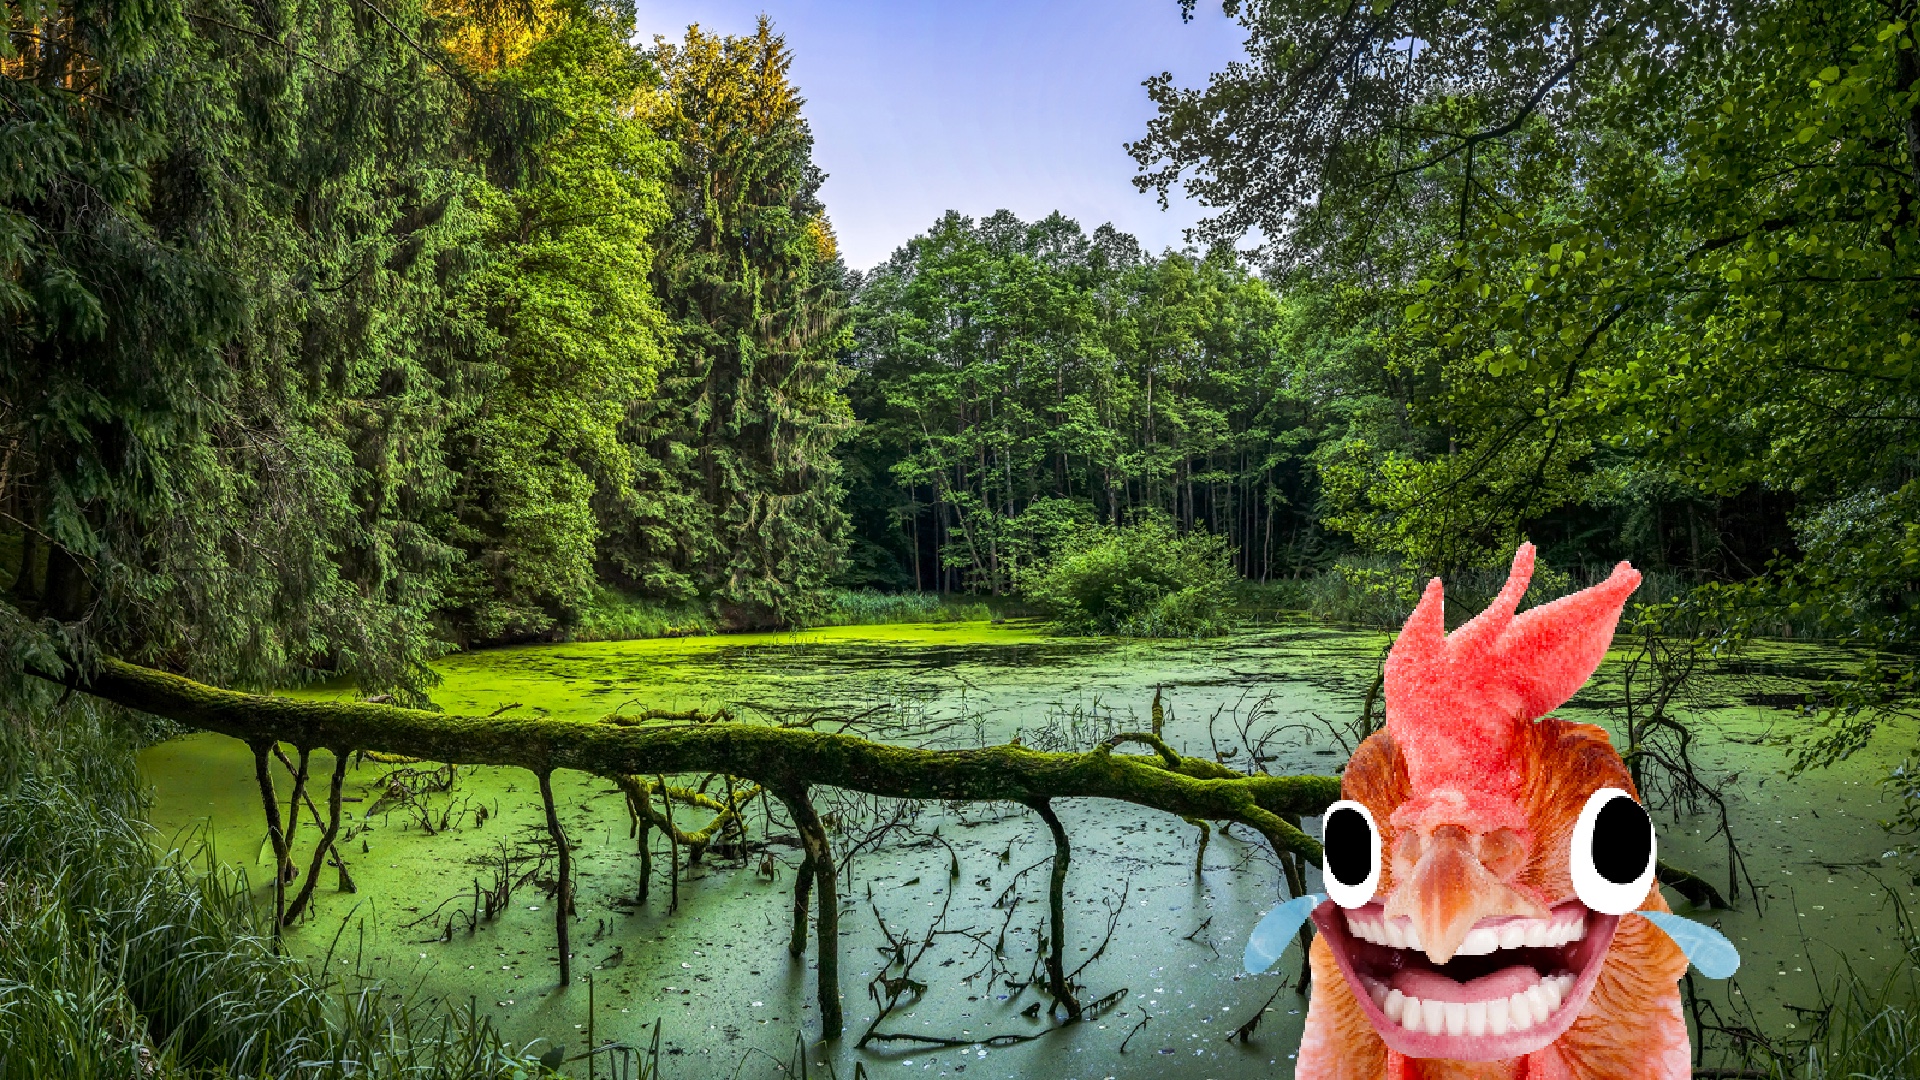 A chicken in a swamp